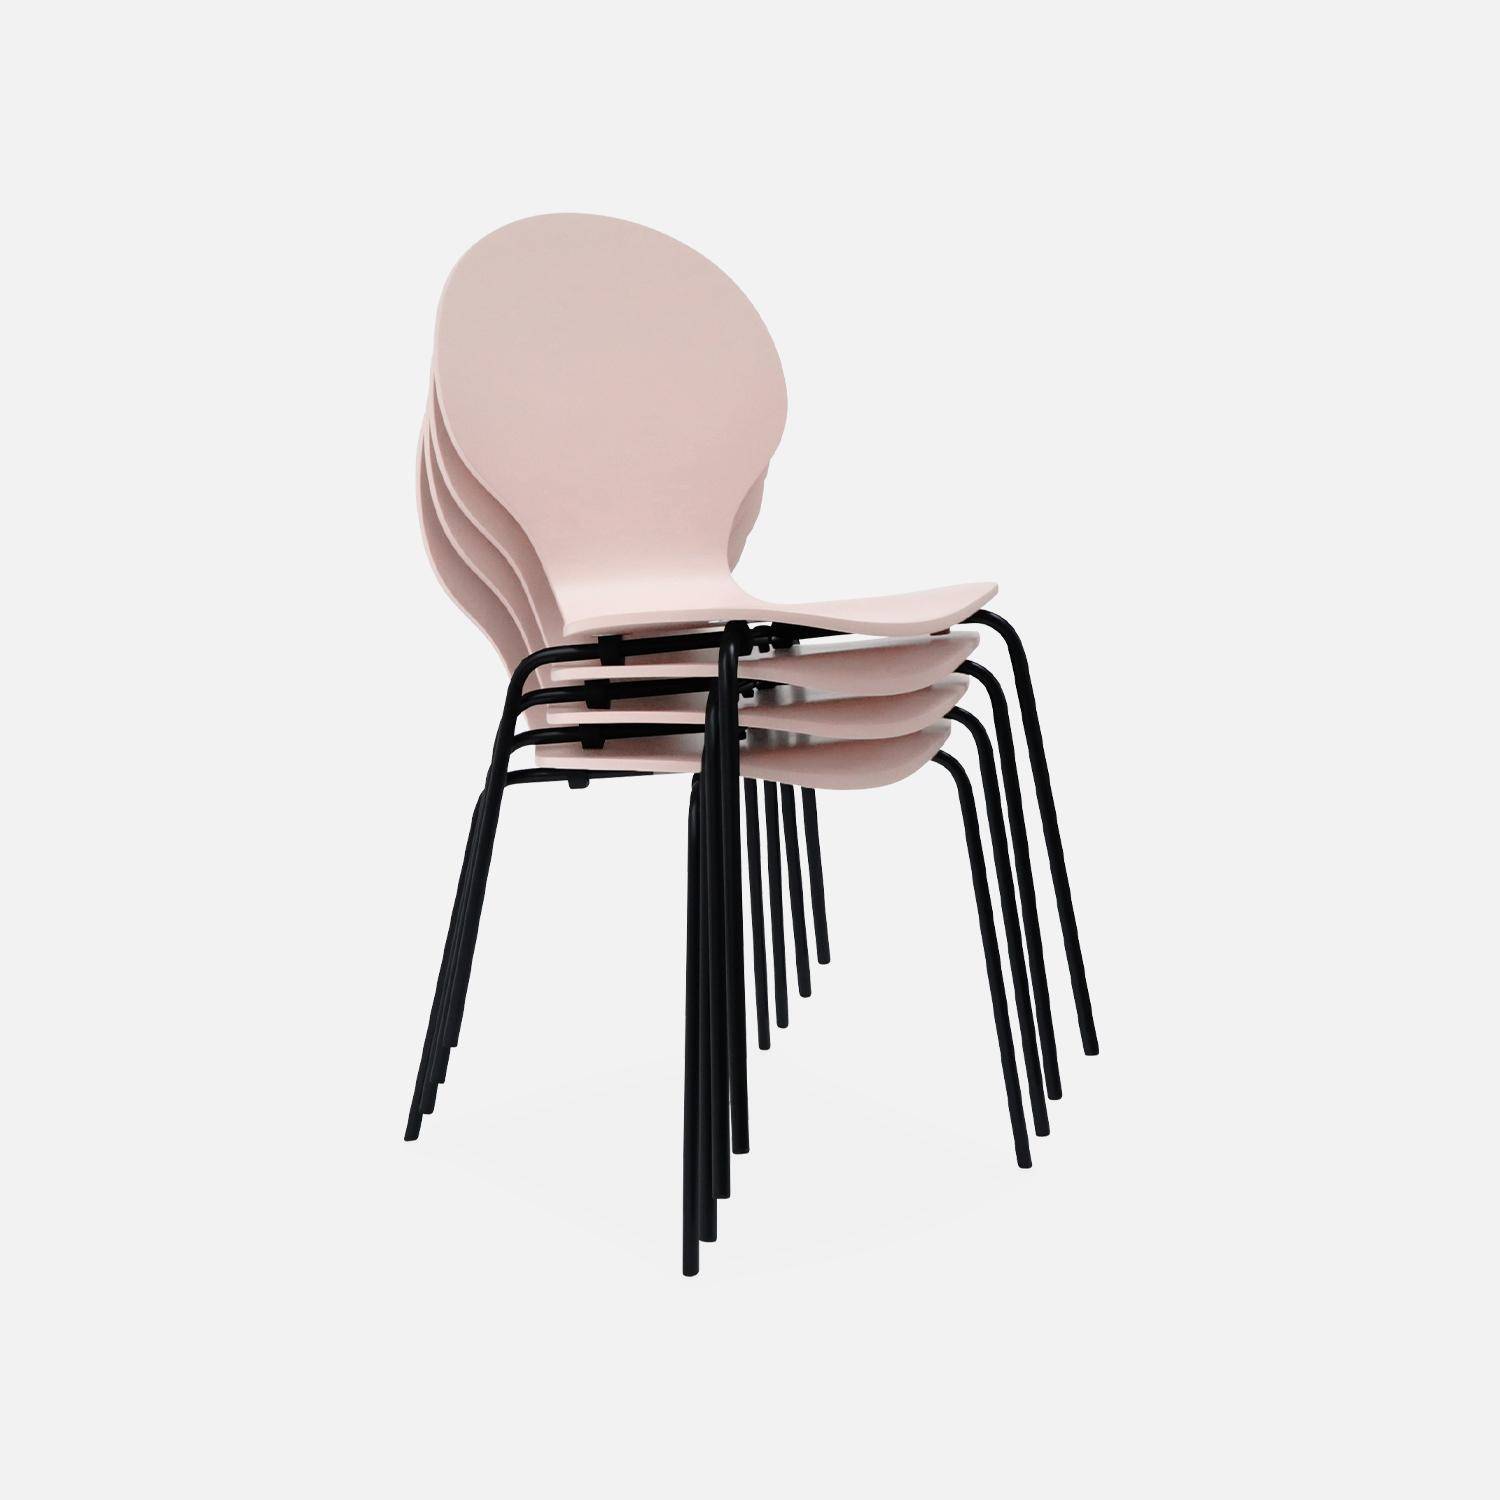 Set di 4 sedie rosa retro impilabili, legno di hevea e compensato, gambe in acciaio, Naomi, L 43 x P 48 x H 87cm,sweeek,Photo6